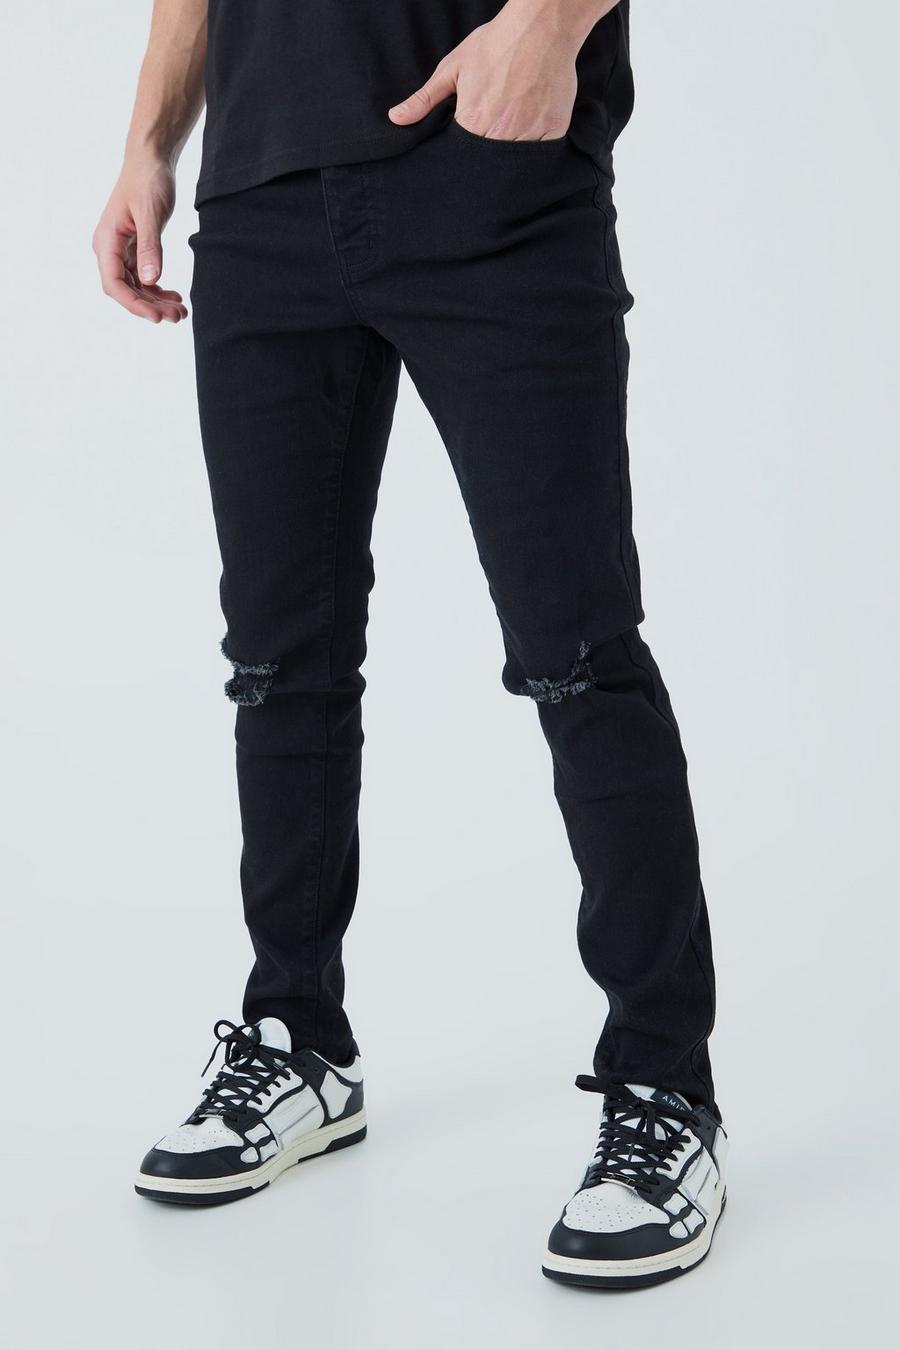 שחור סקיני ג'ינס עם קרעים בברכיים